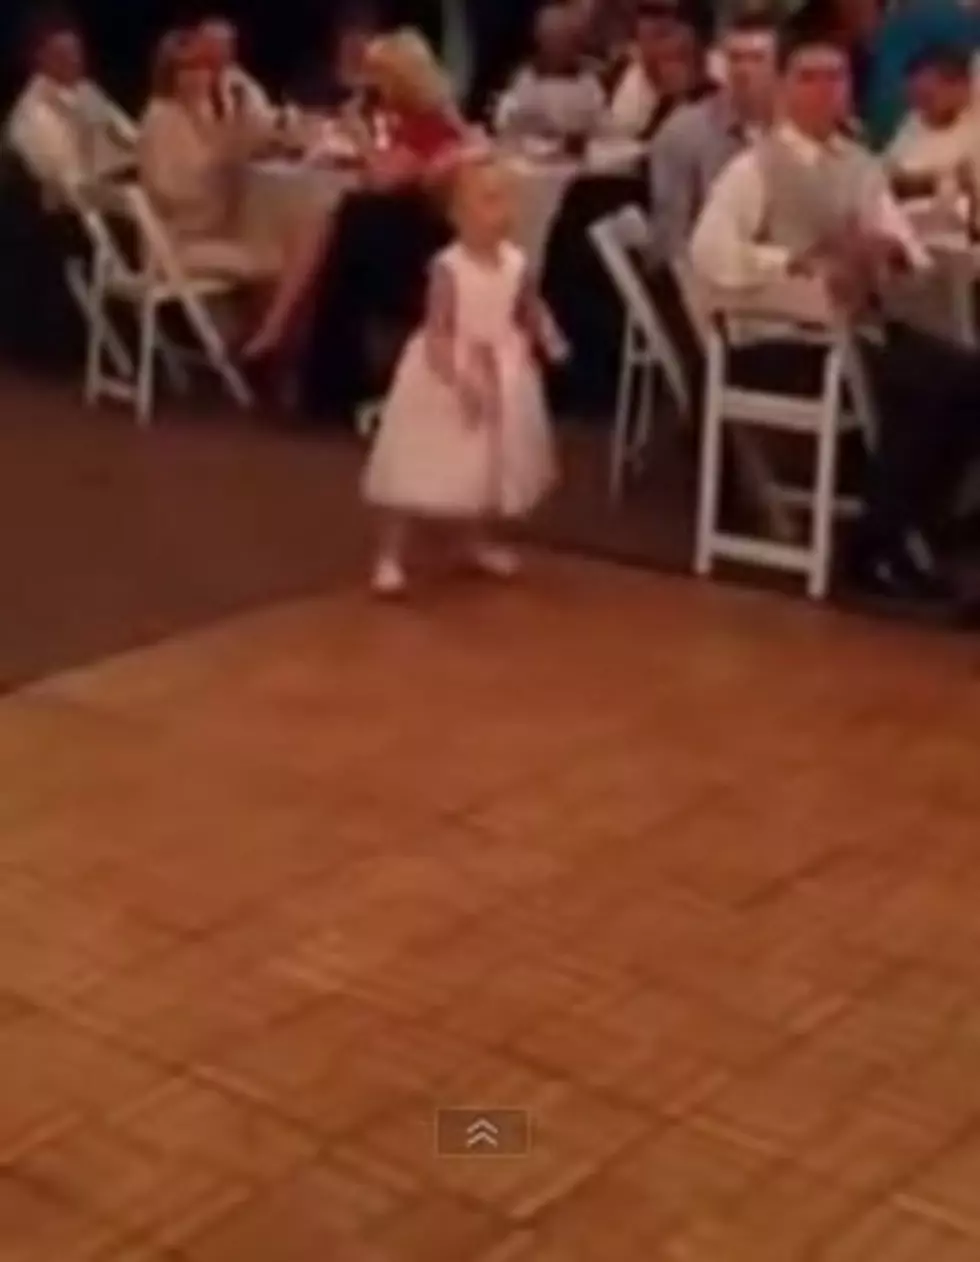 Girl's Dance Moves [VIDEO]